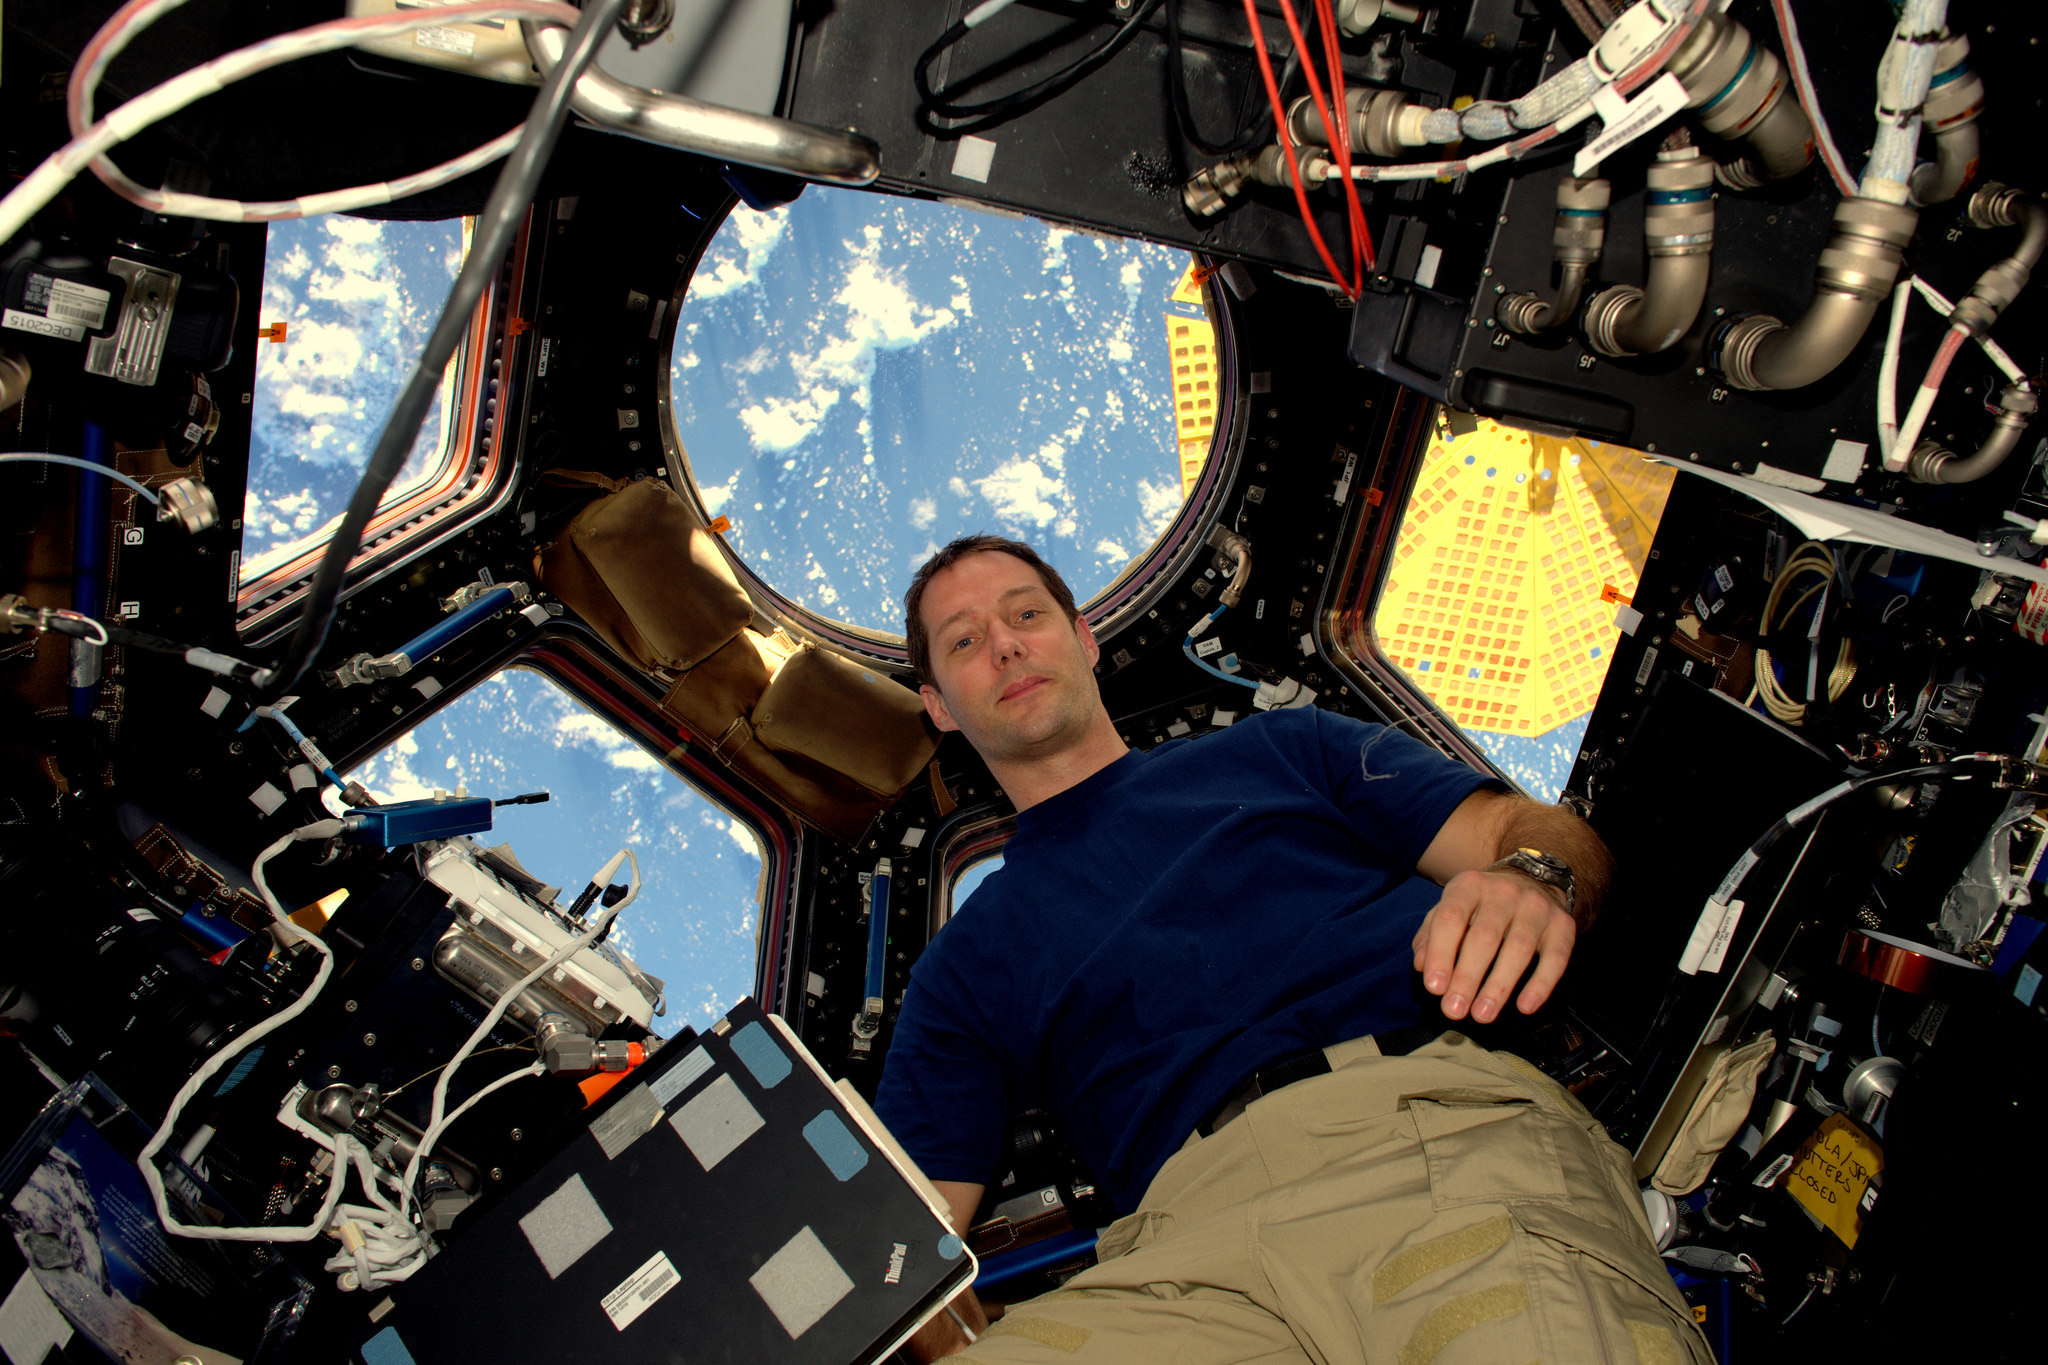 Thomas Pesquet astronaute français plus jeune Européen sur l'ISS